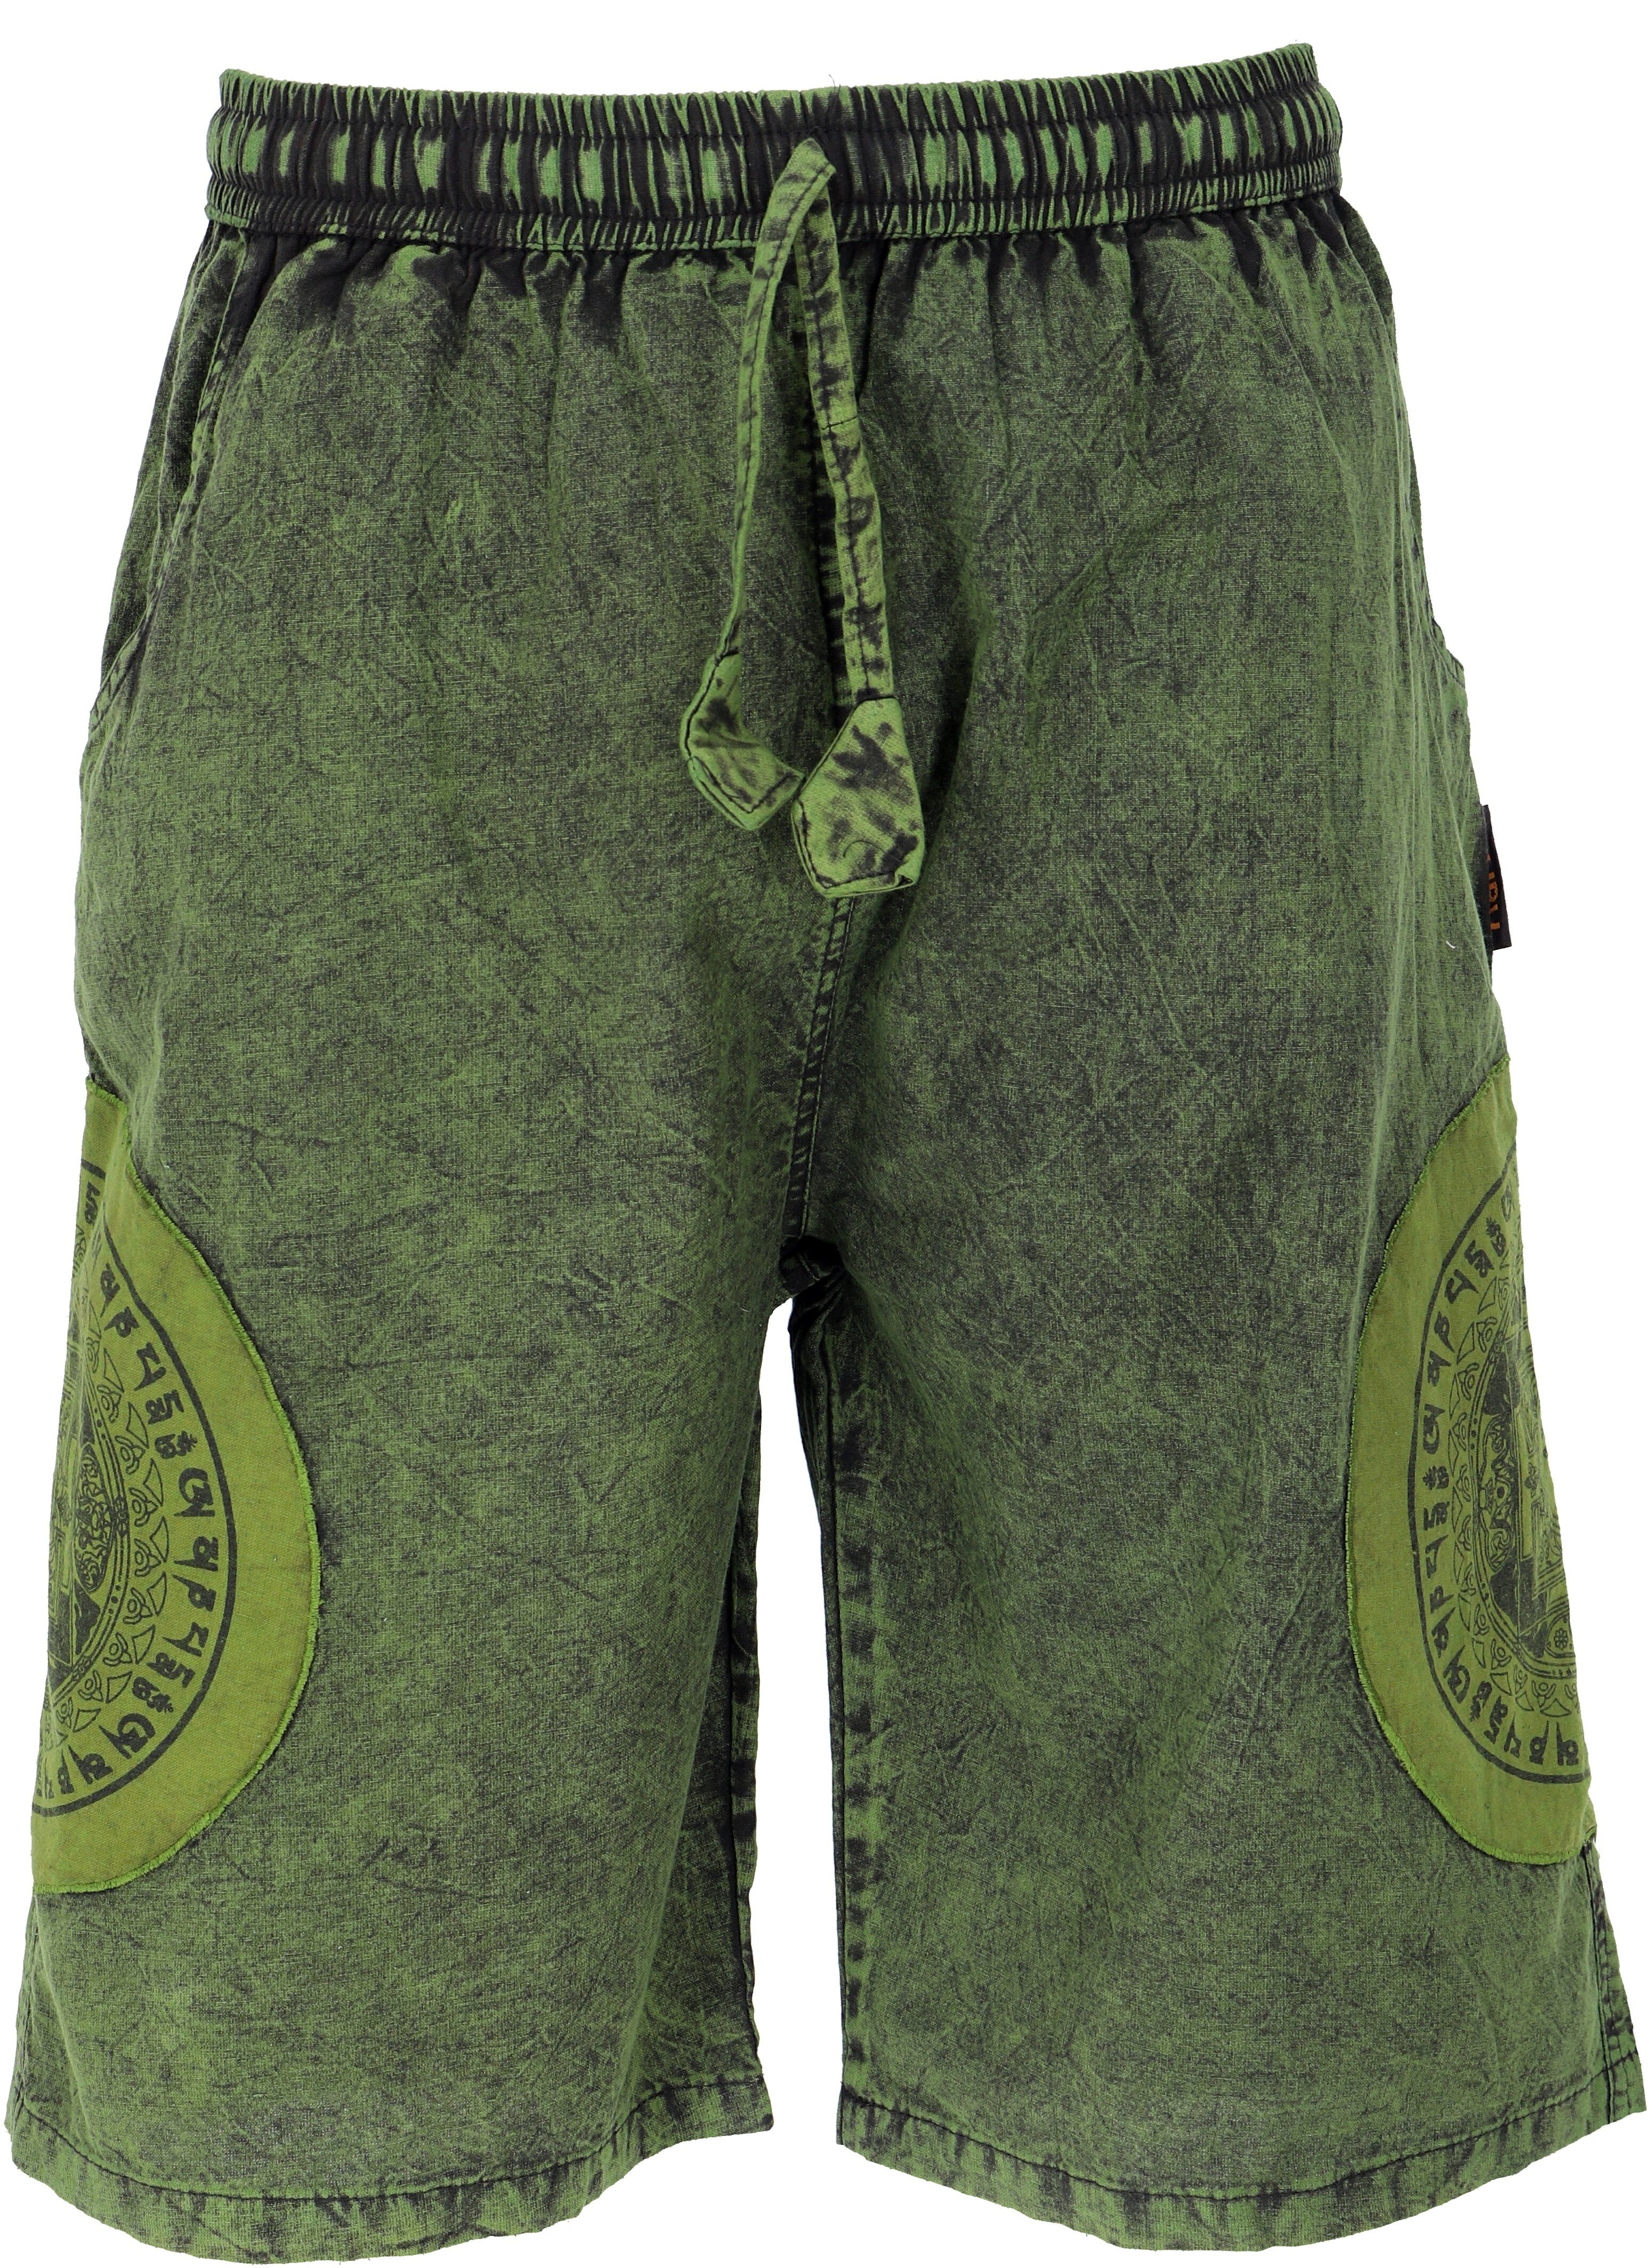 Guru-Shop Relaxhose Ethno Bekleidung Style, Shorts.. Patchwork Ethno Yogashorts, Hippie, alternative grün Stonwasch